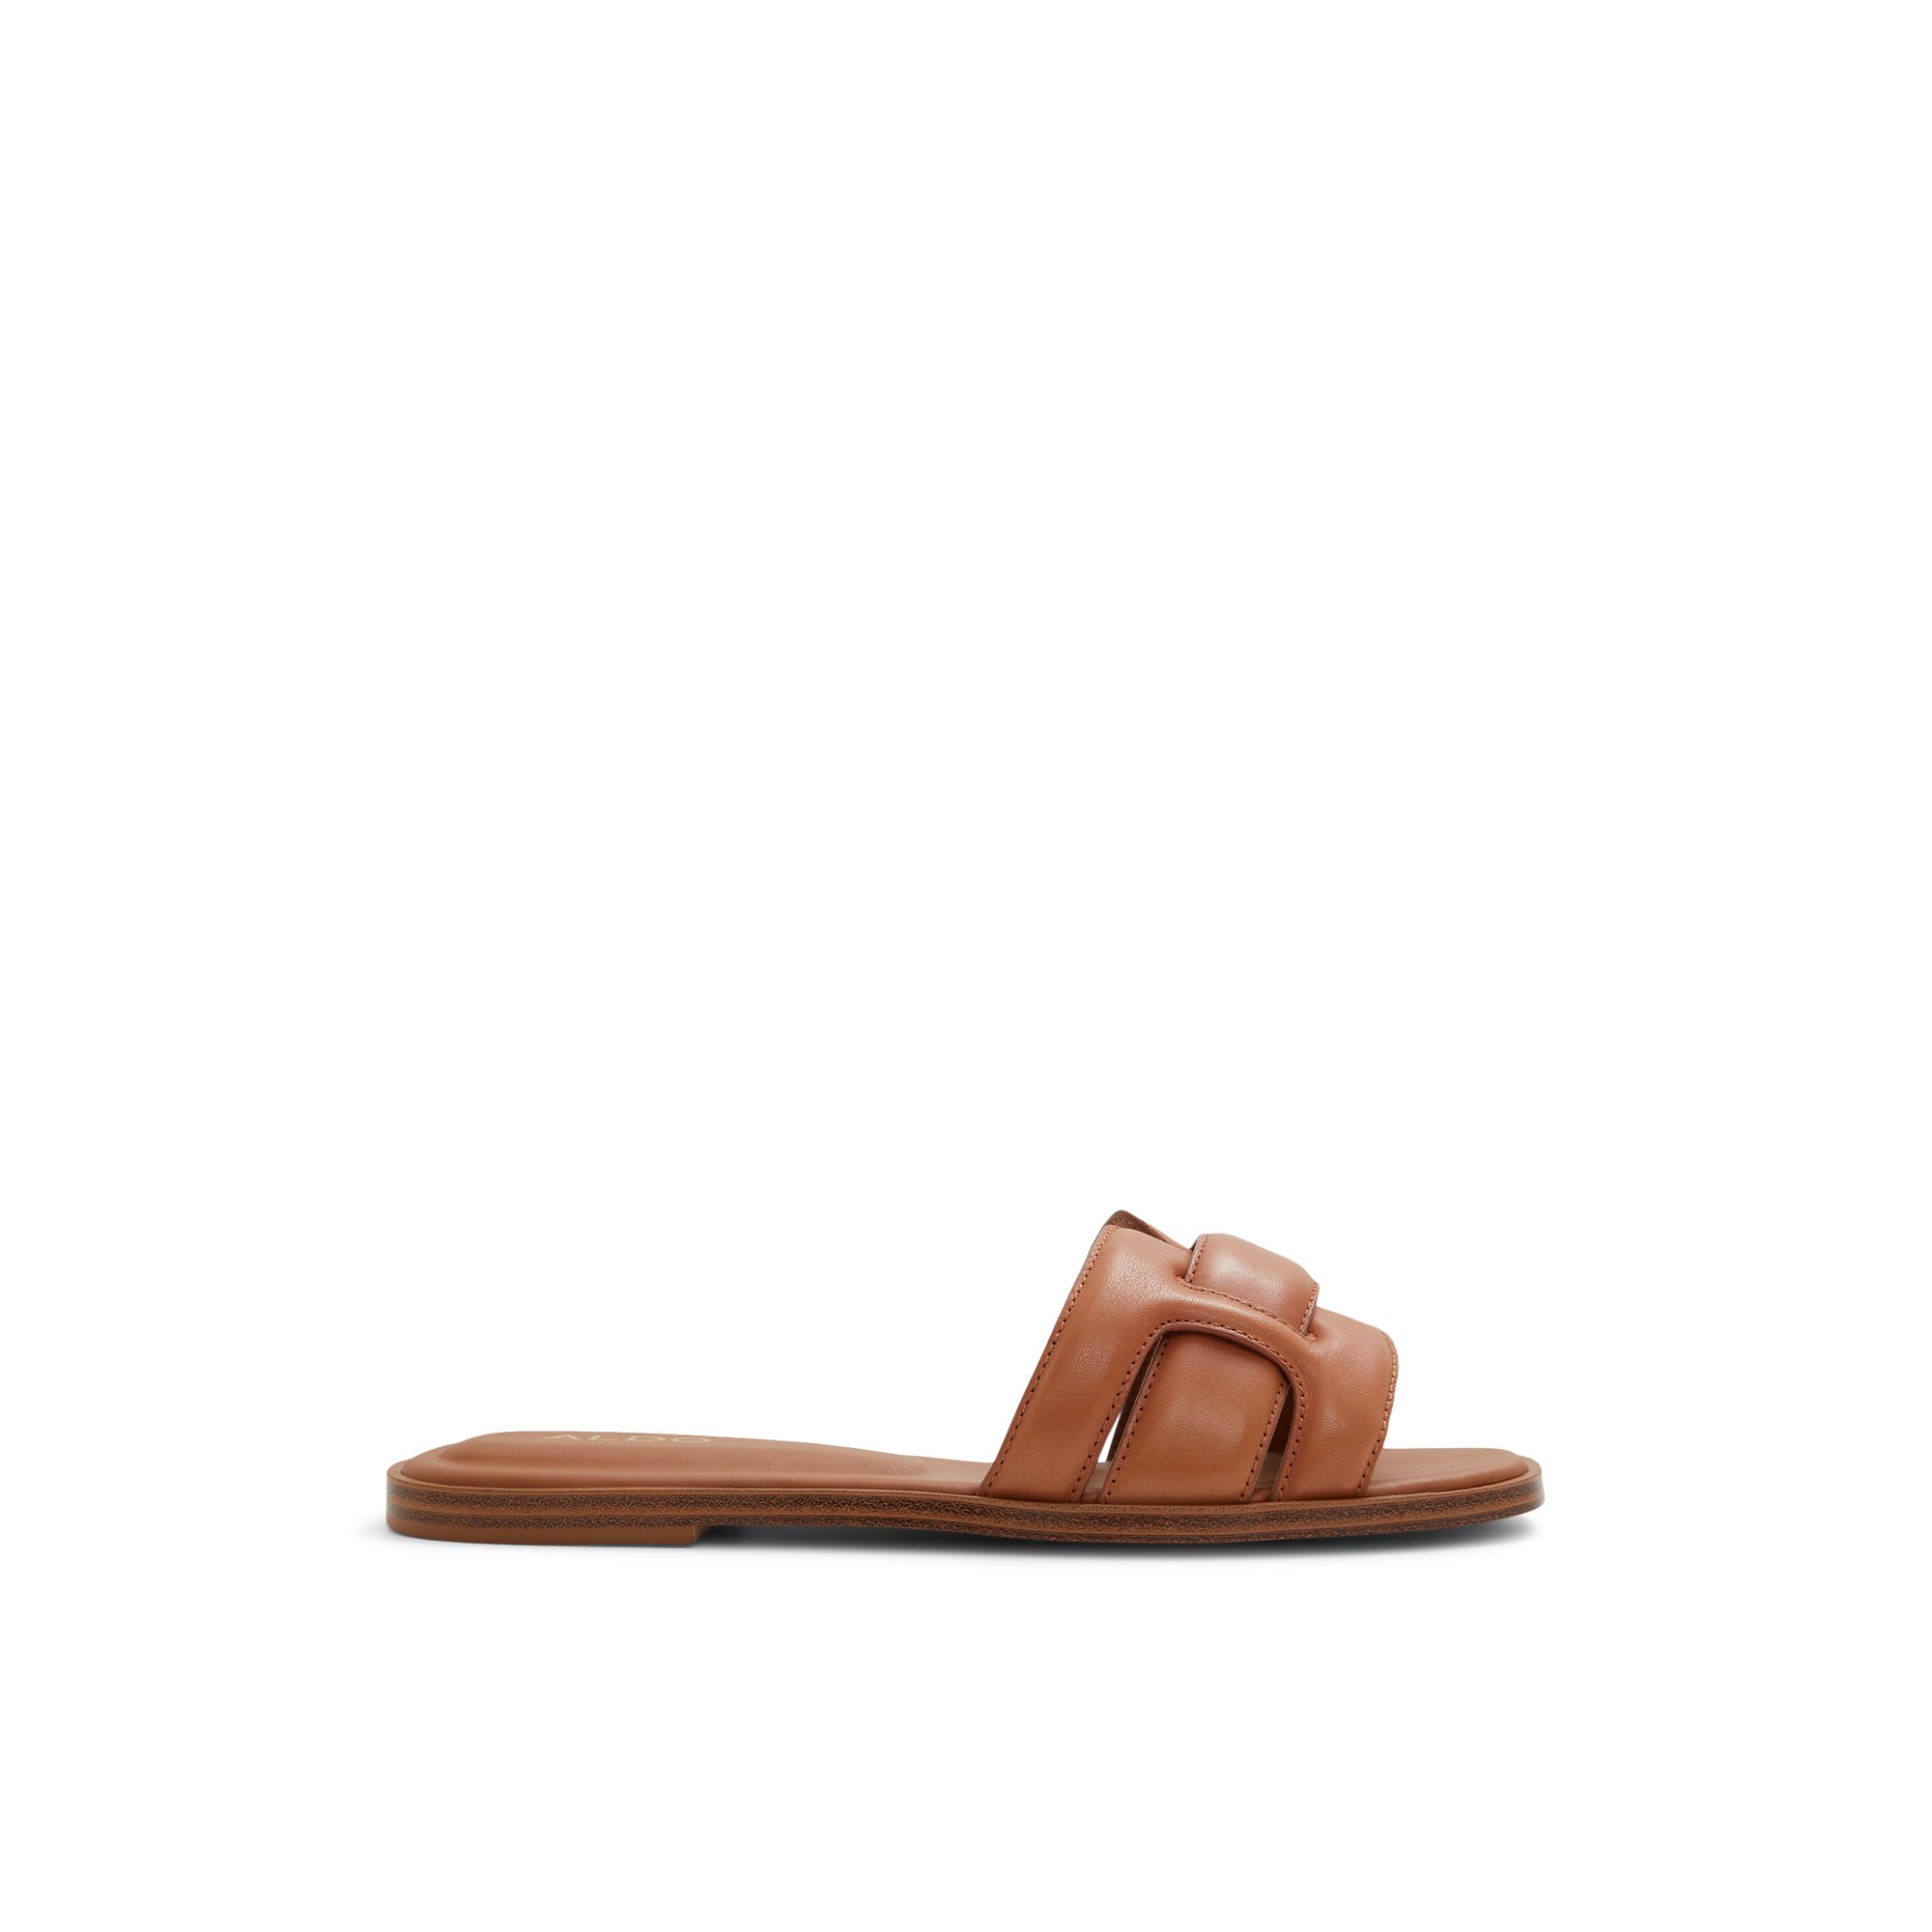 ALDO Elenaa - Women's Sandals Flats - Brown